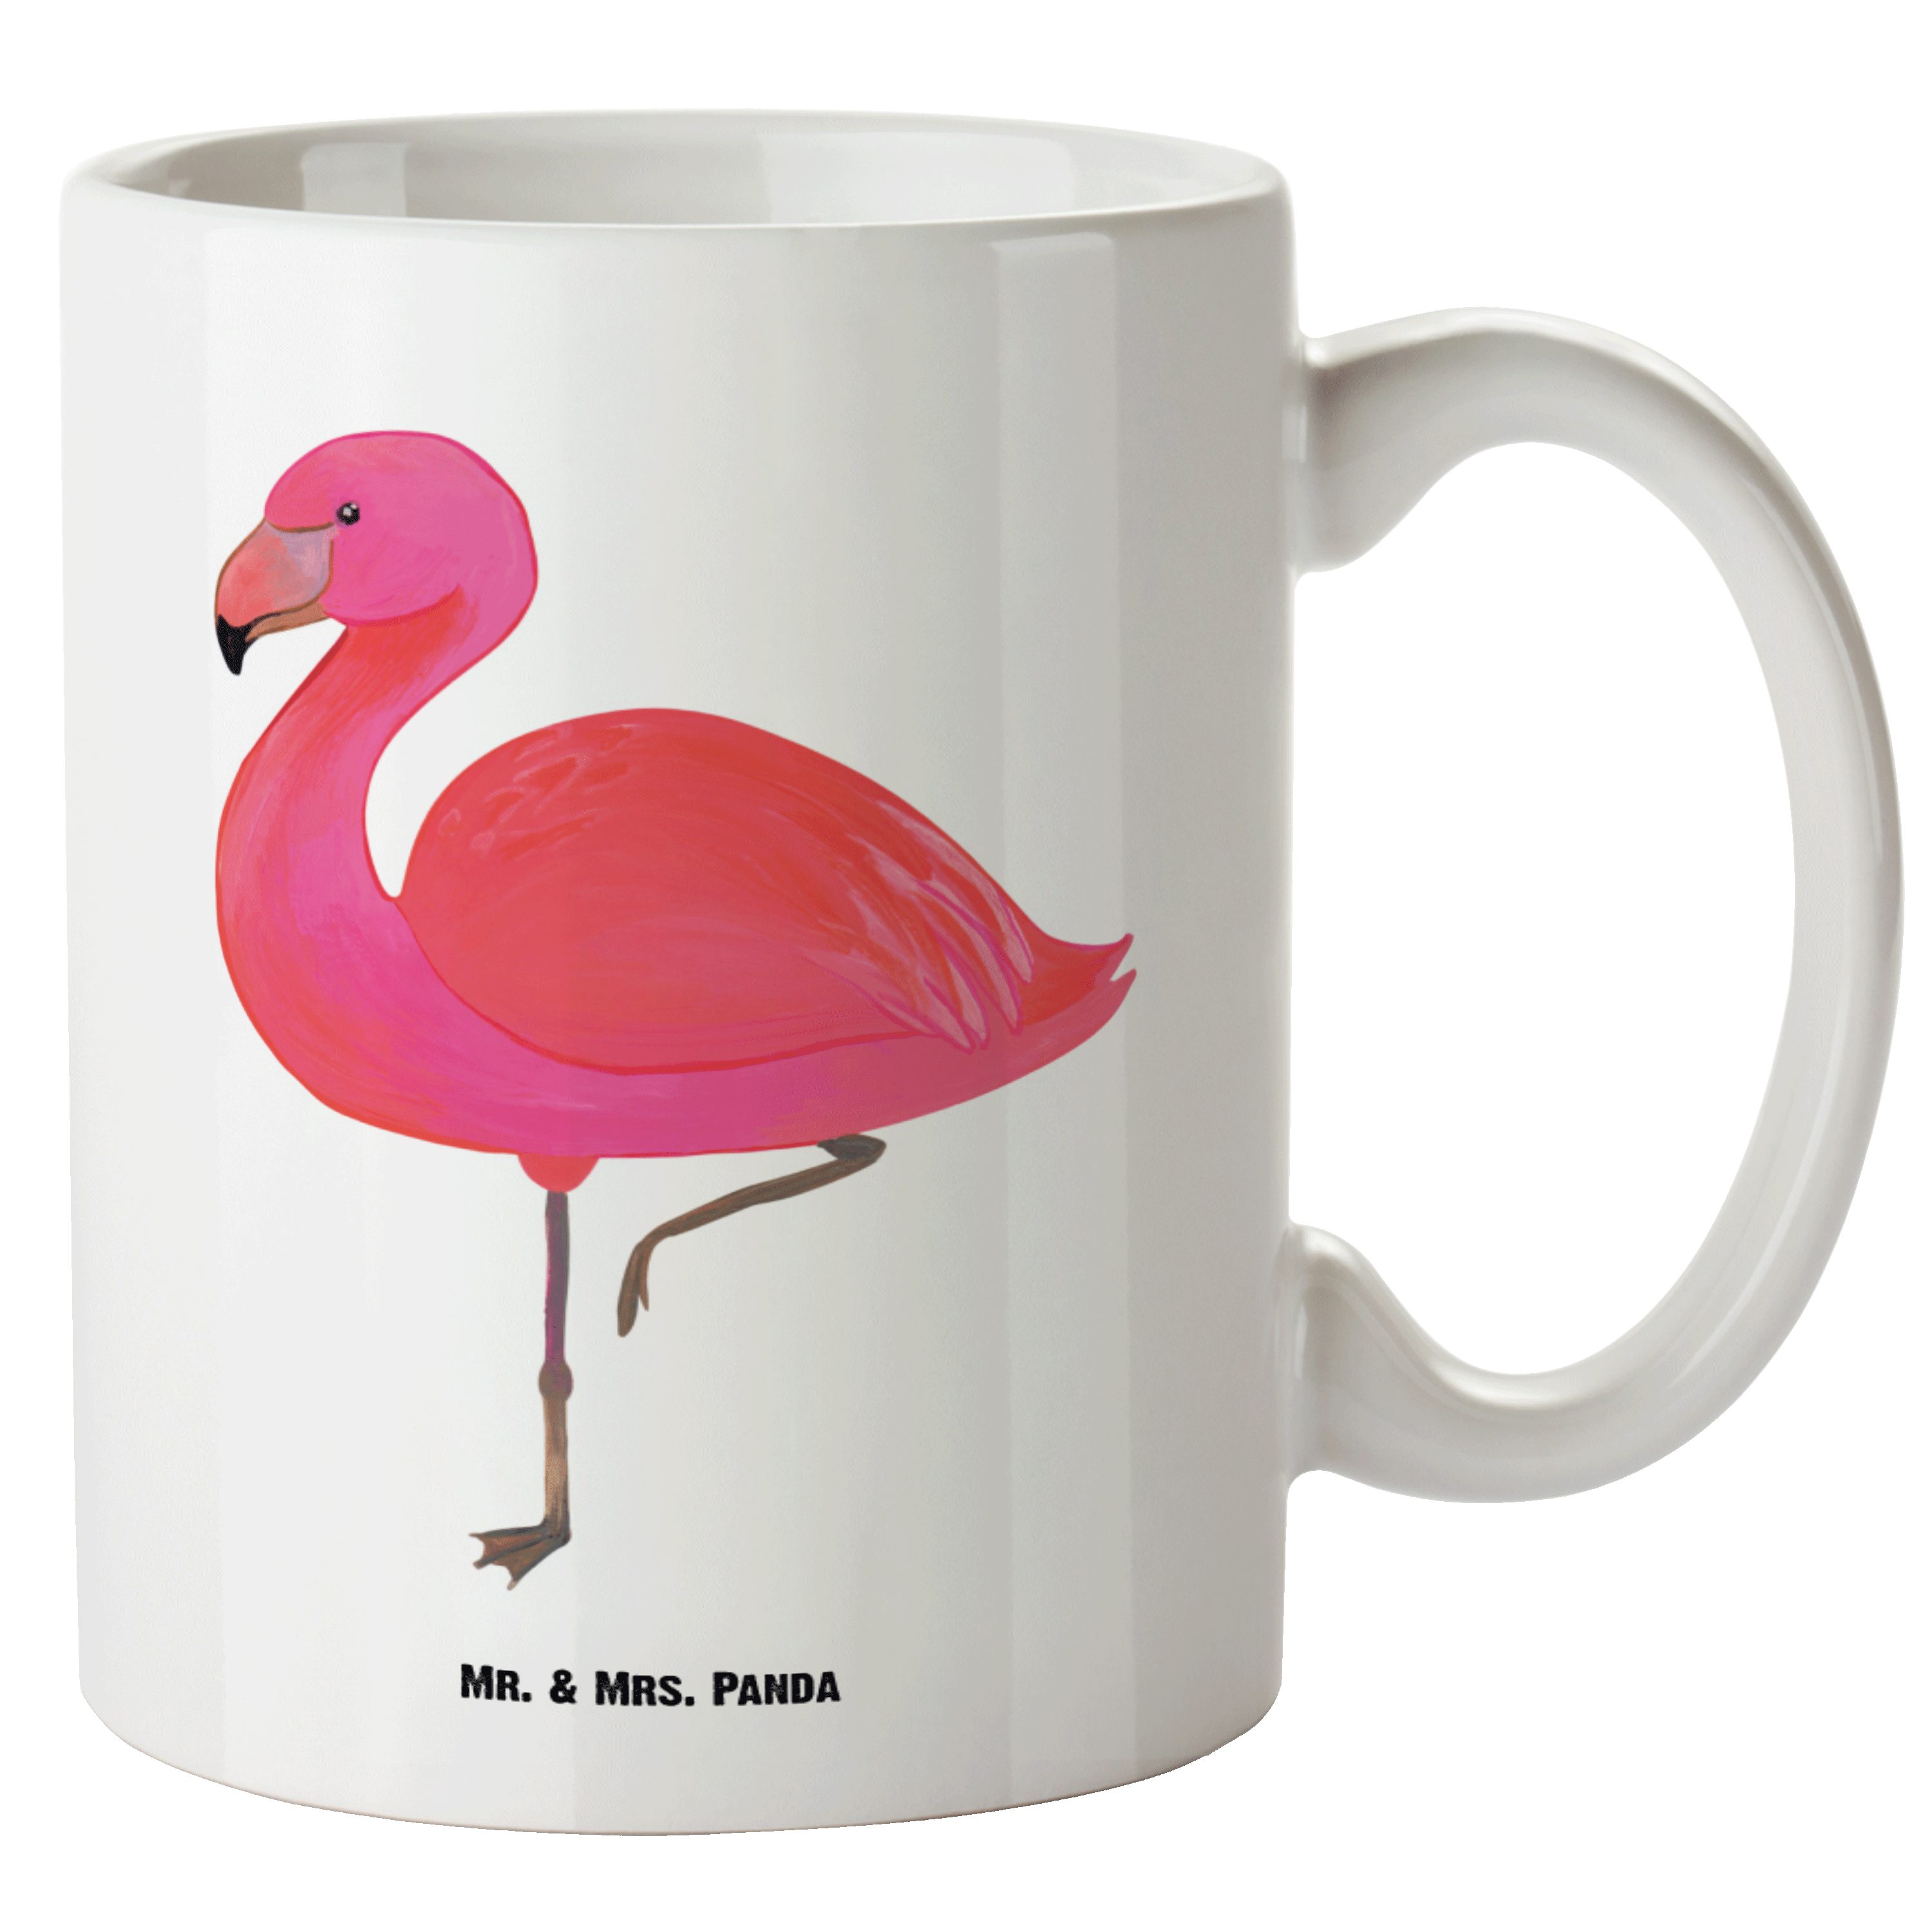 Mr. & Mrs. Panda Tasse Flamingo classic - Weiß - Geschenk, Große Tasse, einzigartig, XL Bech, XL Tasse Keramik